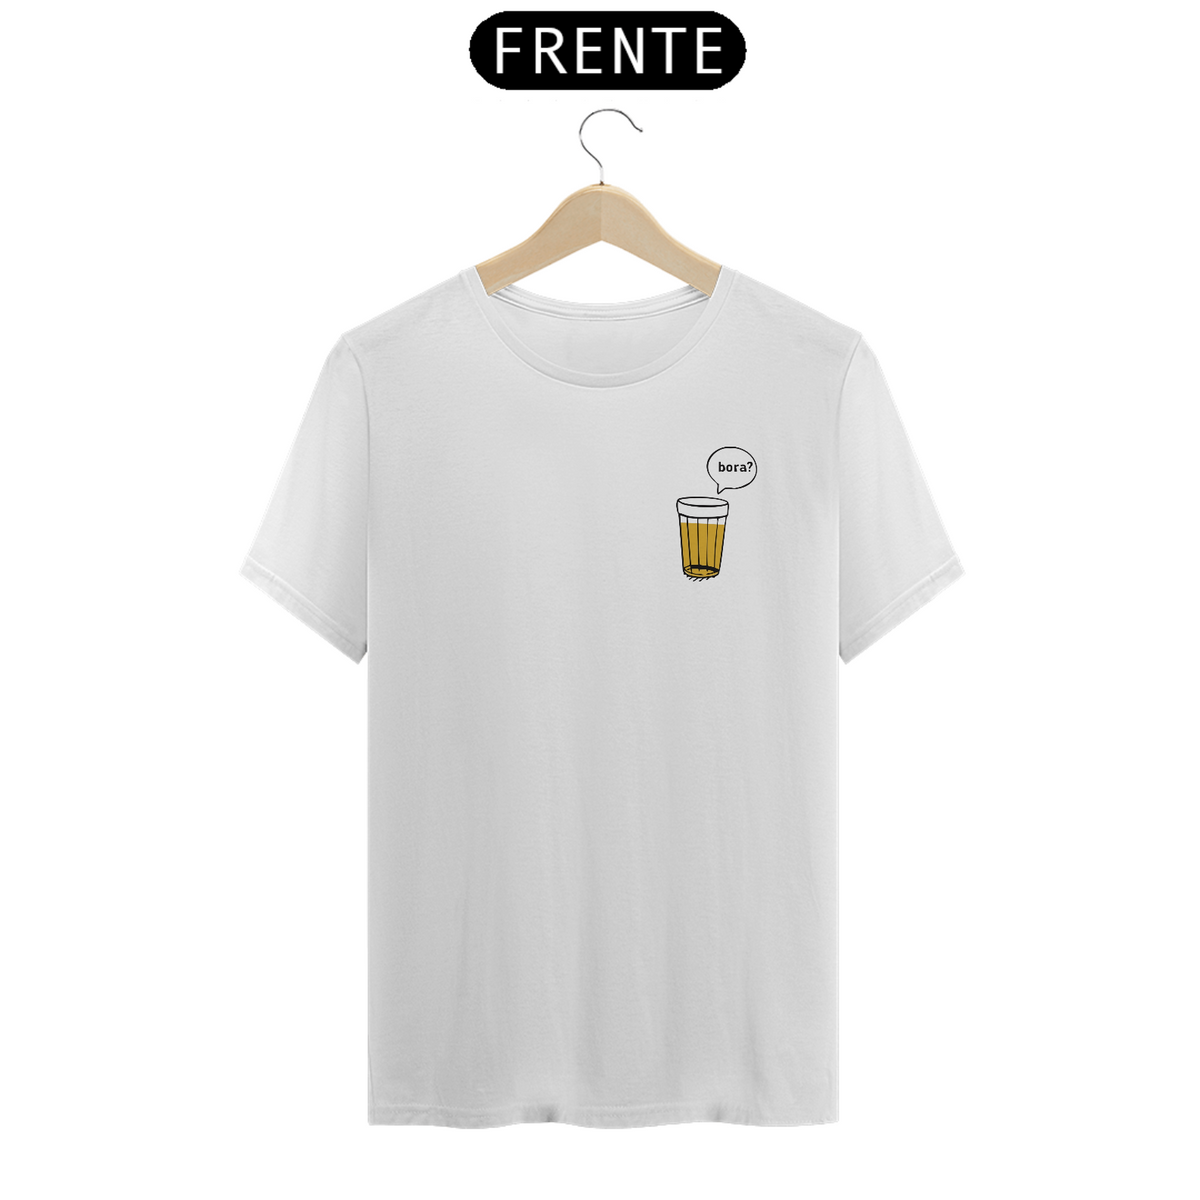 Nome do produto: Camiseta Cerveja